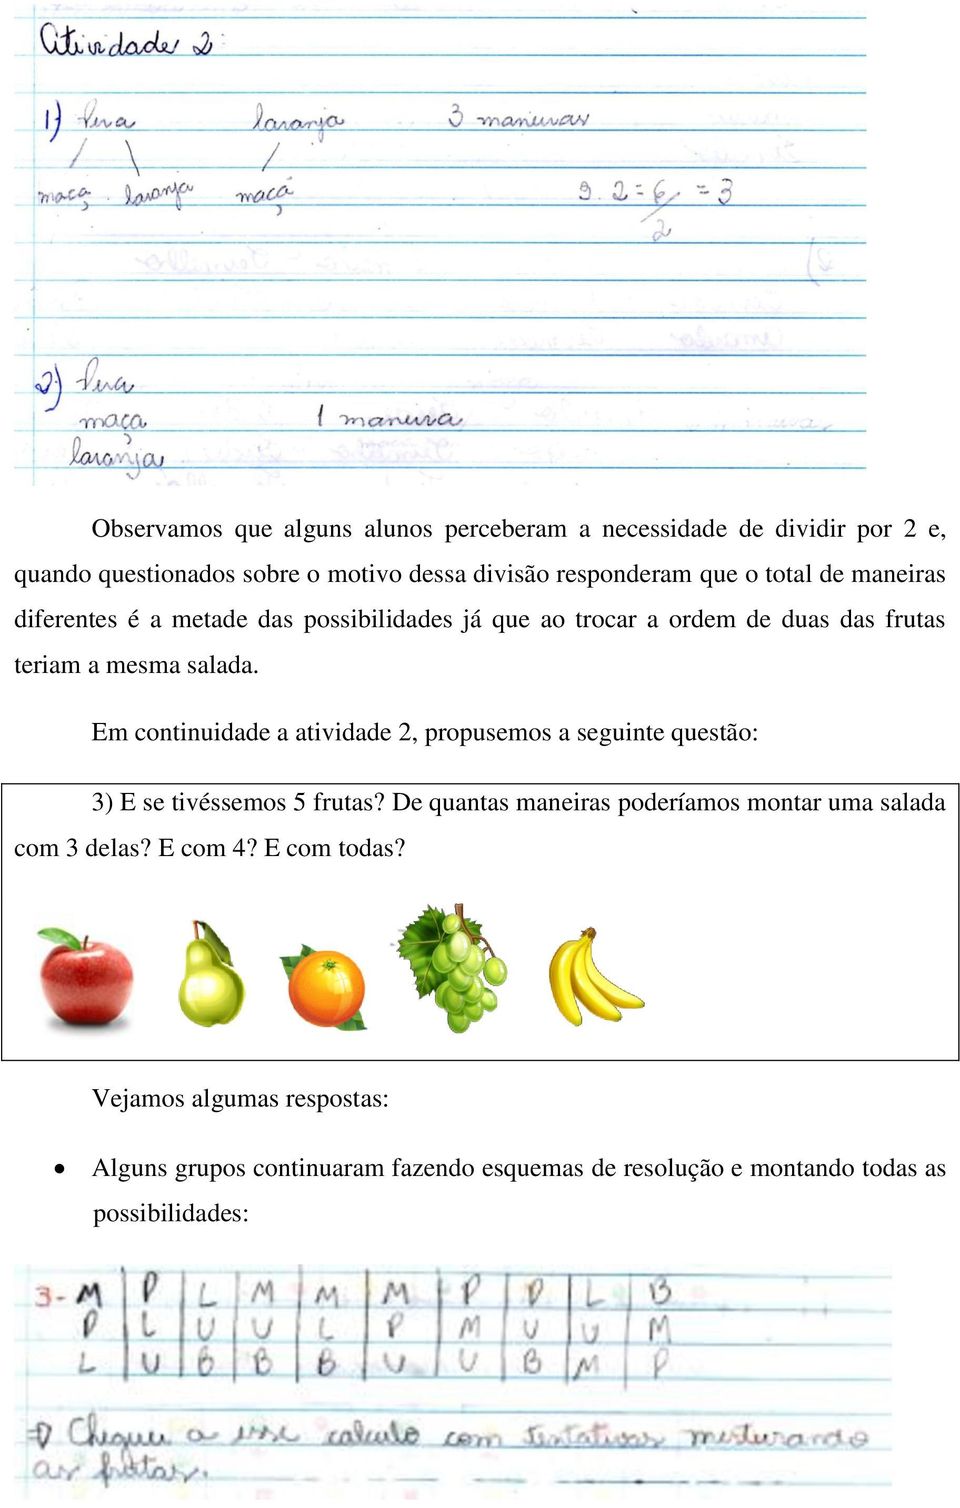 Em continuidade a atividade 2, propusemos a seguinte questão: 3) E se tivéssemos 5 frutas?